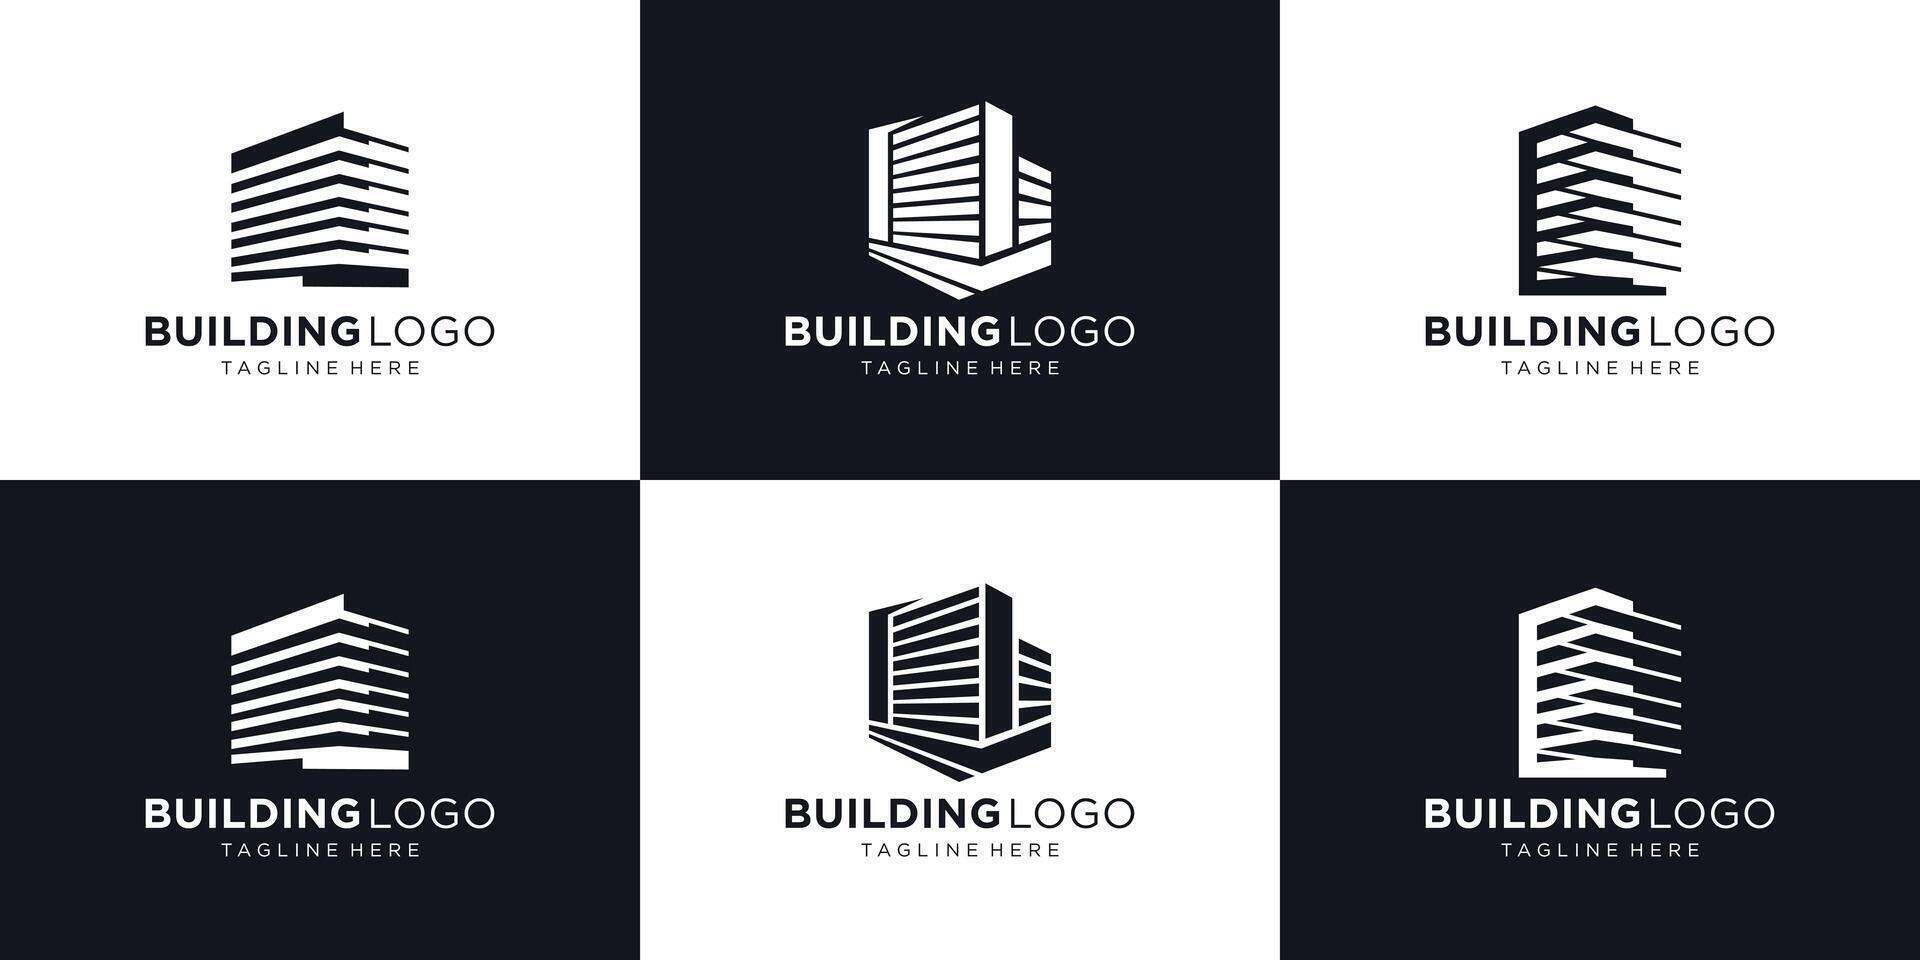 symbool van gebouw logo ontwerp inspiratie, abstract echt landgoed bouwen logo verzameling. vector